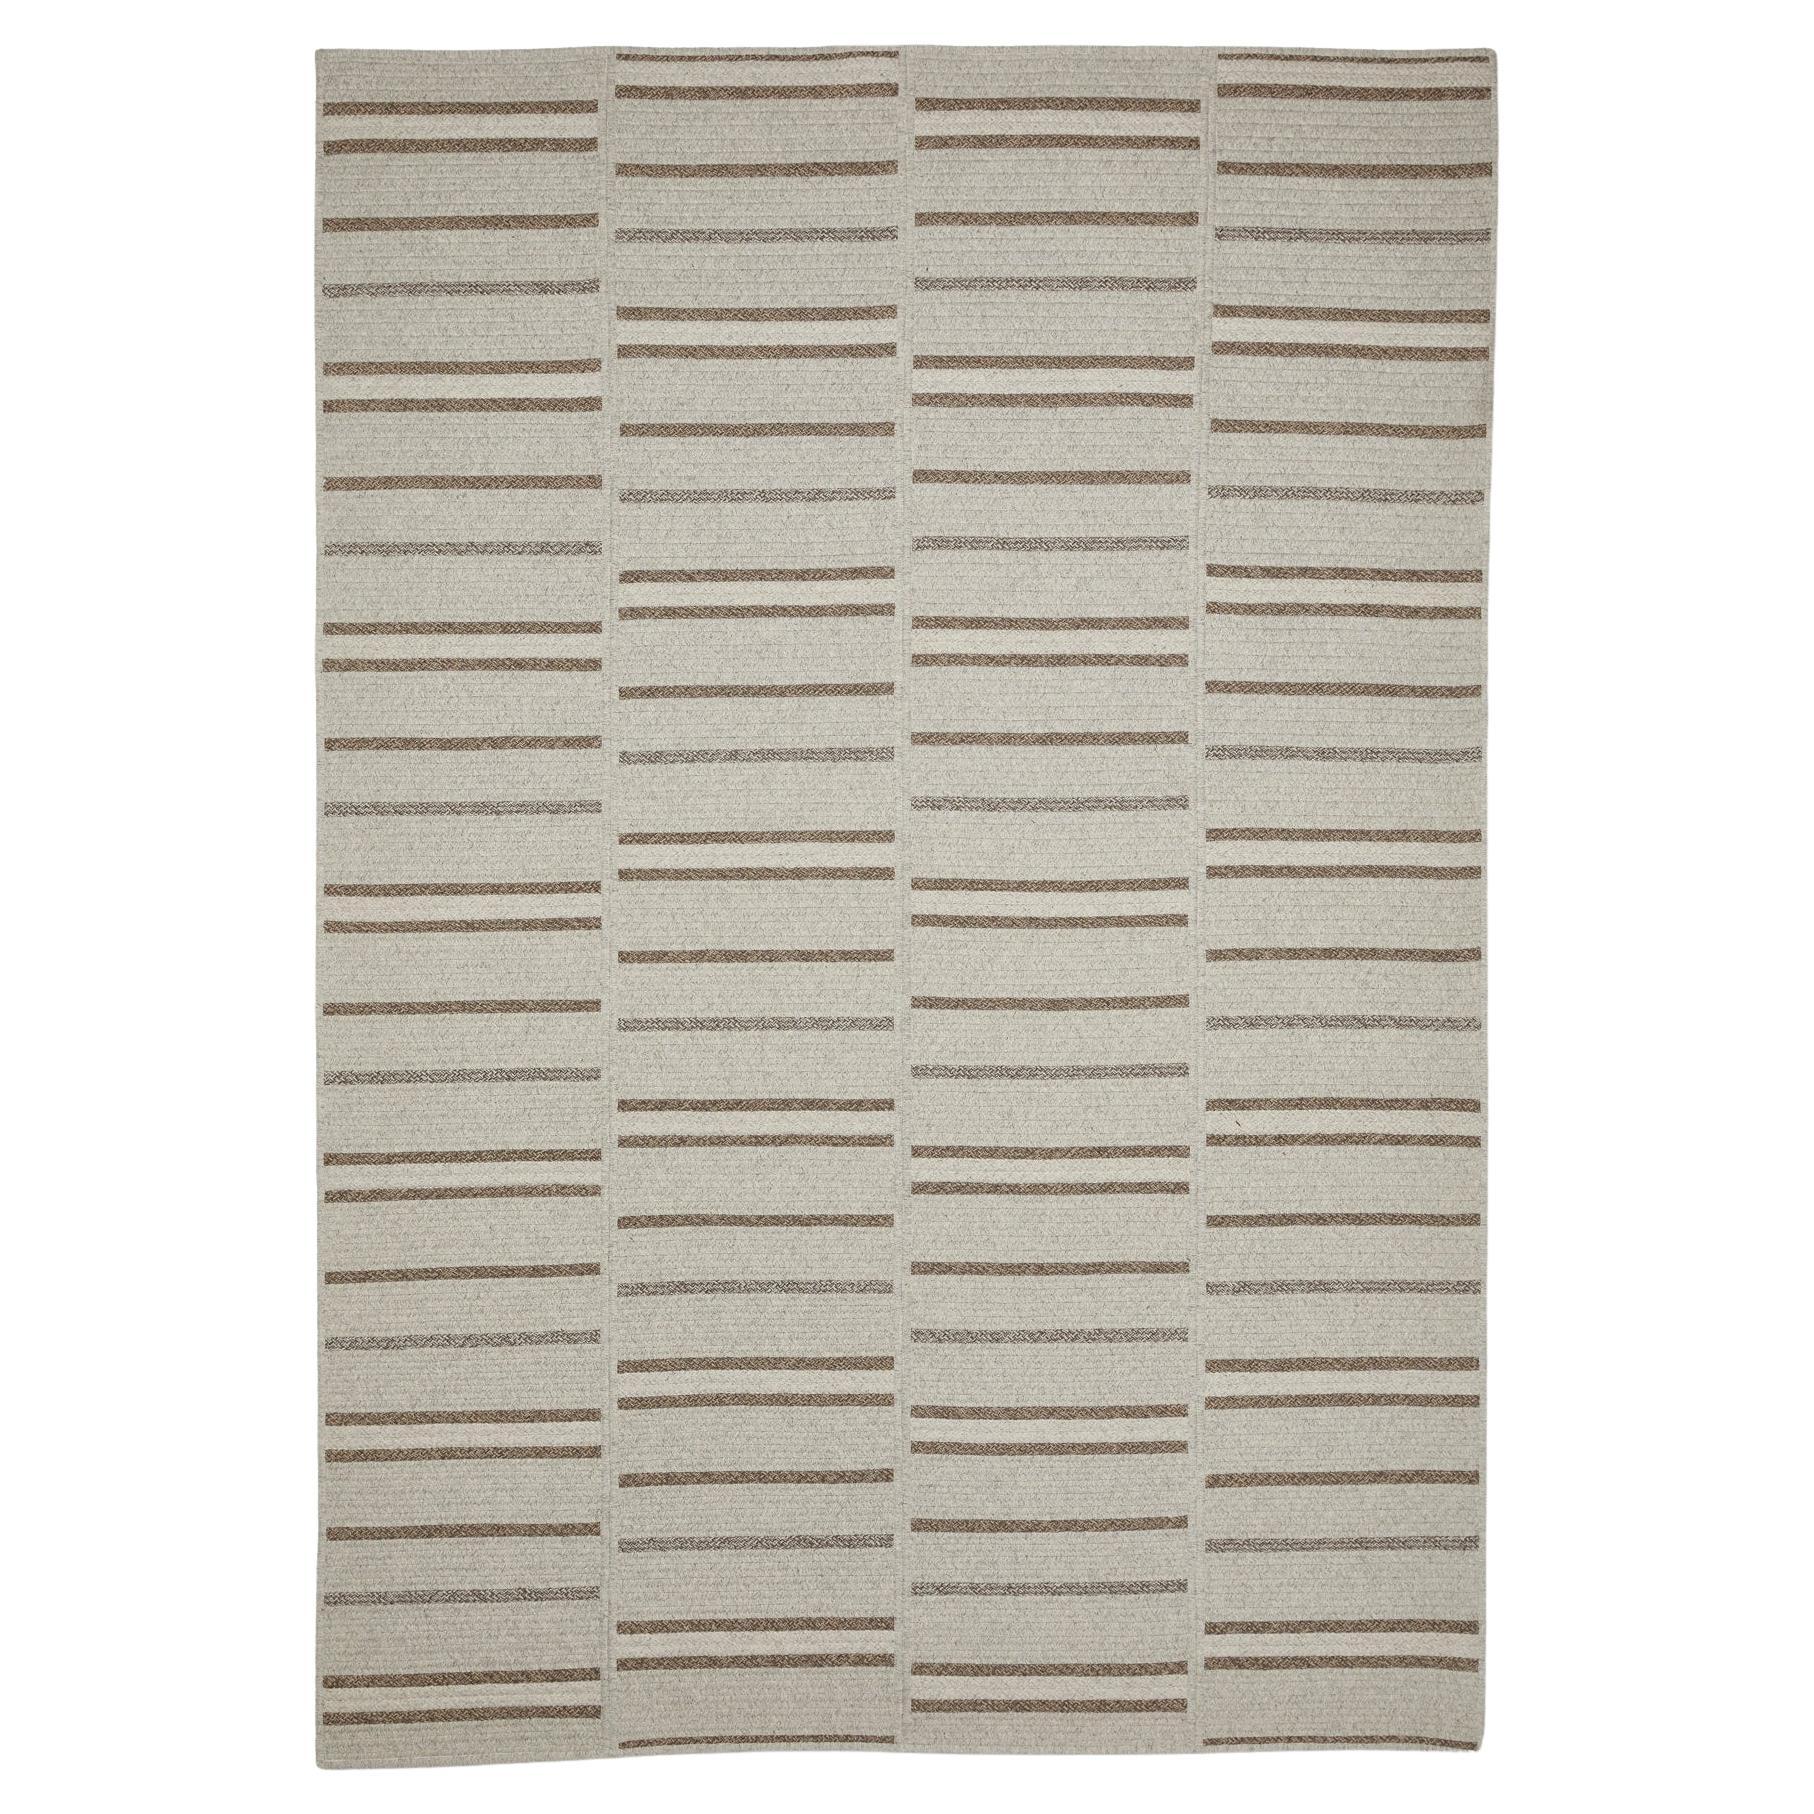 Thayer Design Studio, tapis à plateau en laine naturelle, gris clair et marron, 6' x 9' en vente